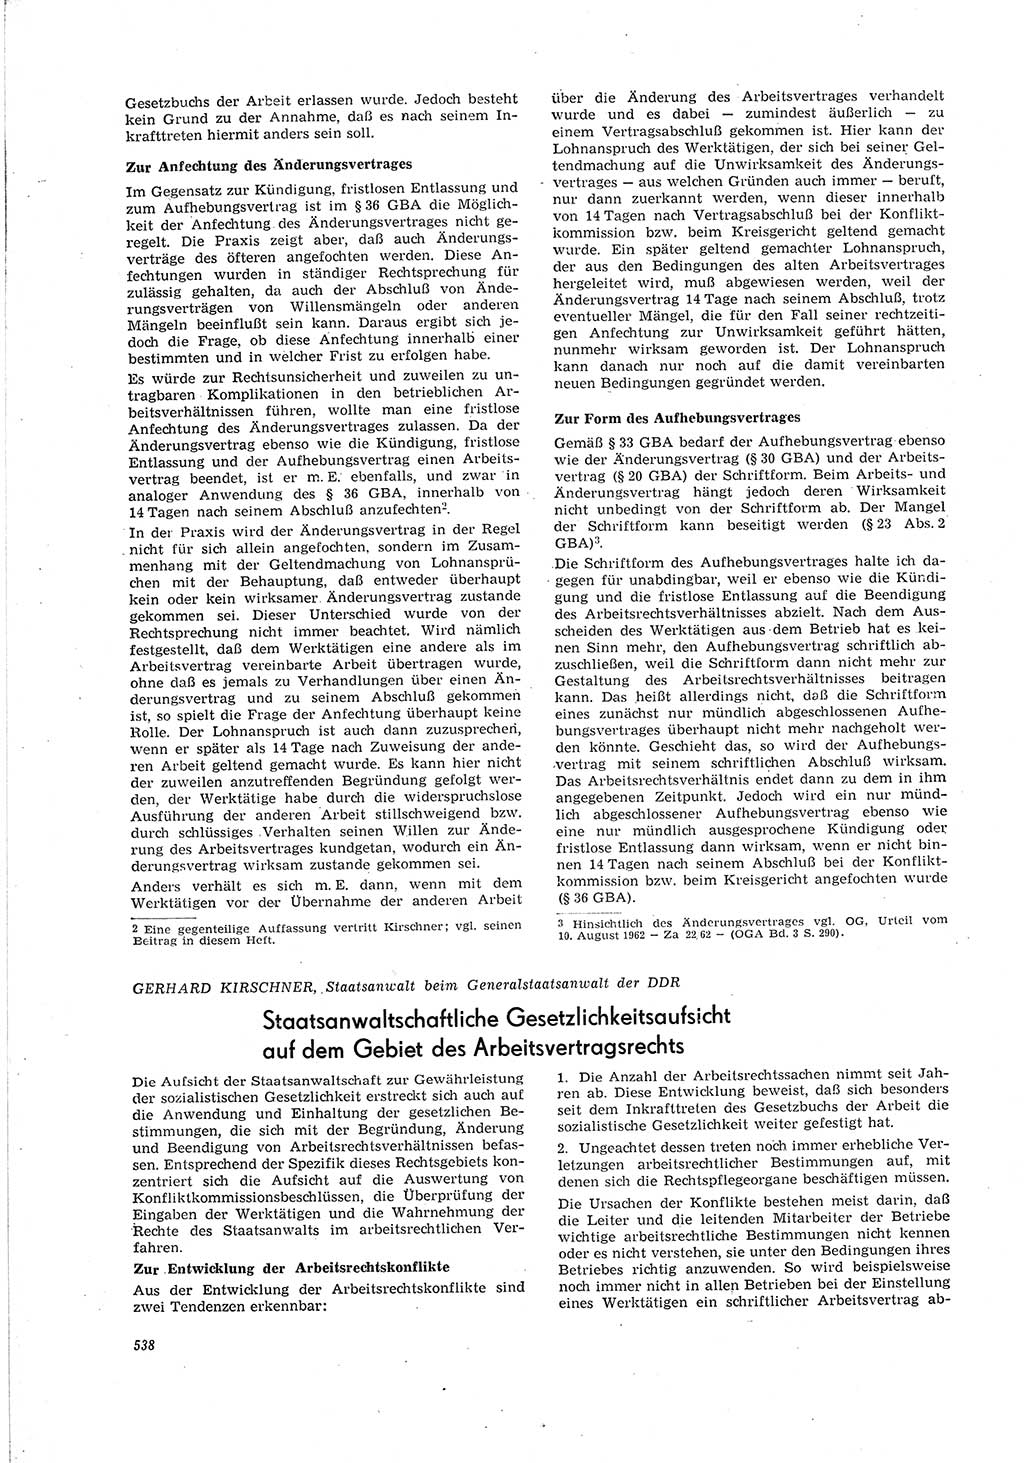 Neue Justiz (NJ), Zeitschrift für Recht und Rechtswissenschaft [Deutsche Demokratische Republik (DDR)], 20. Jahrgang 1966, Seite 538 (NJ DDR 1966, S. 538)